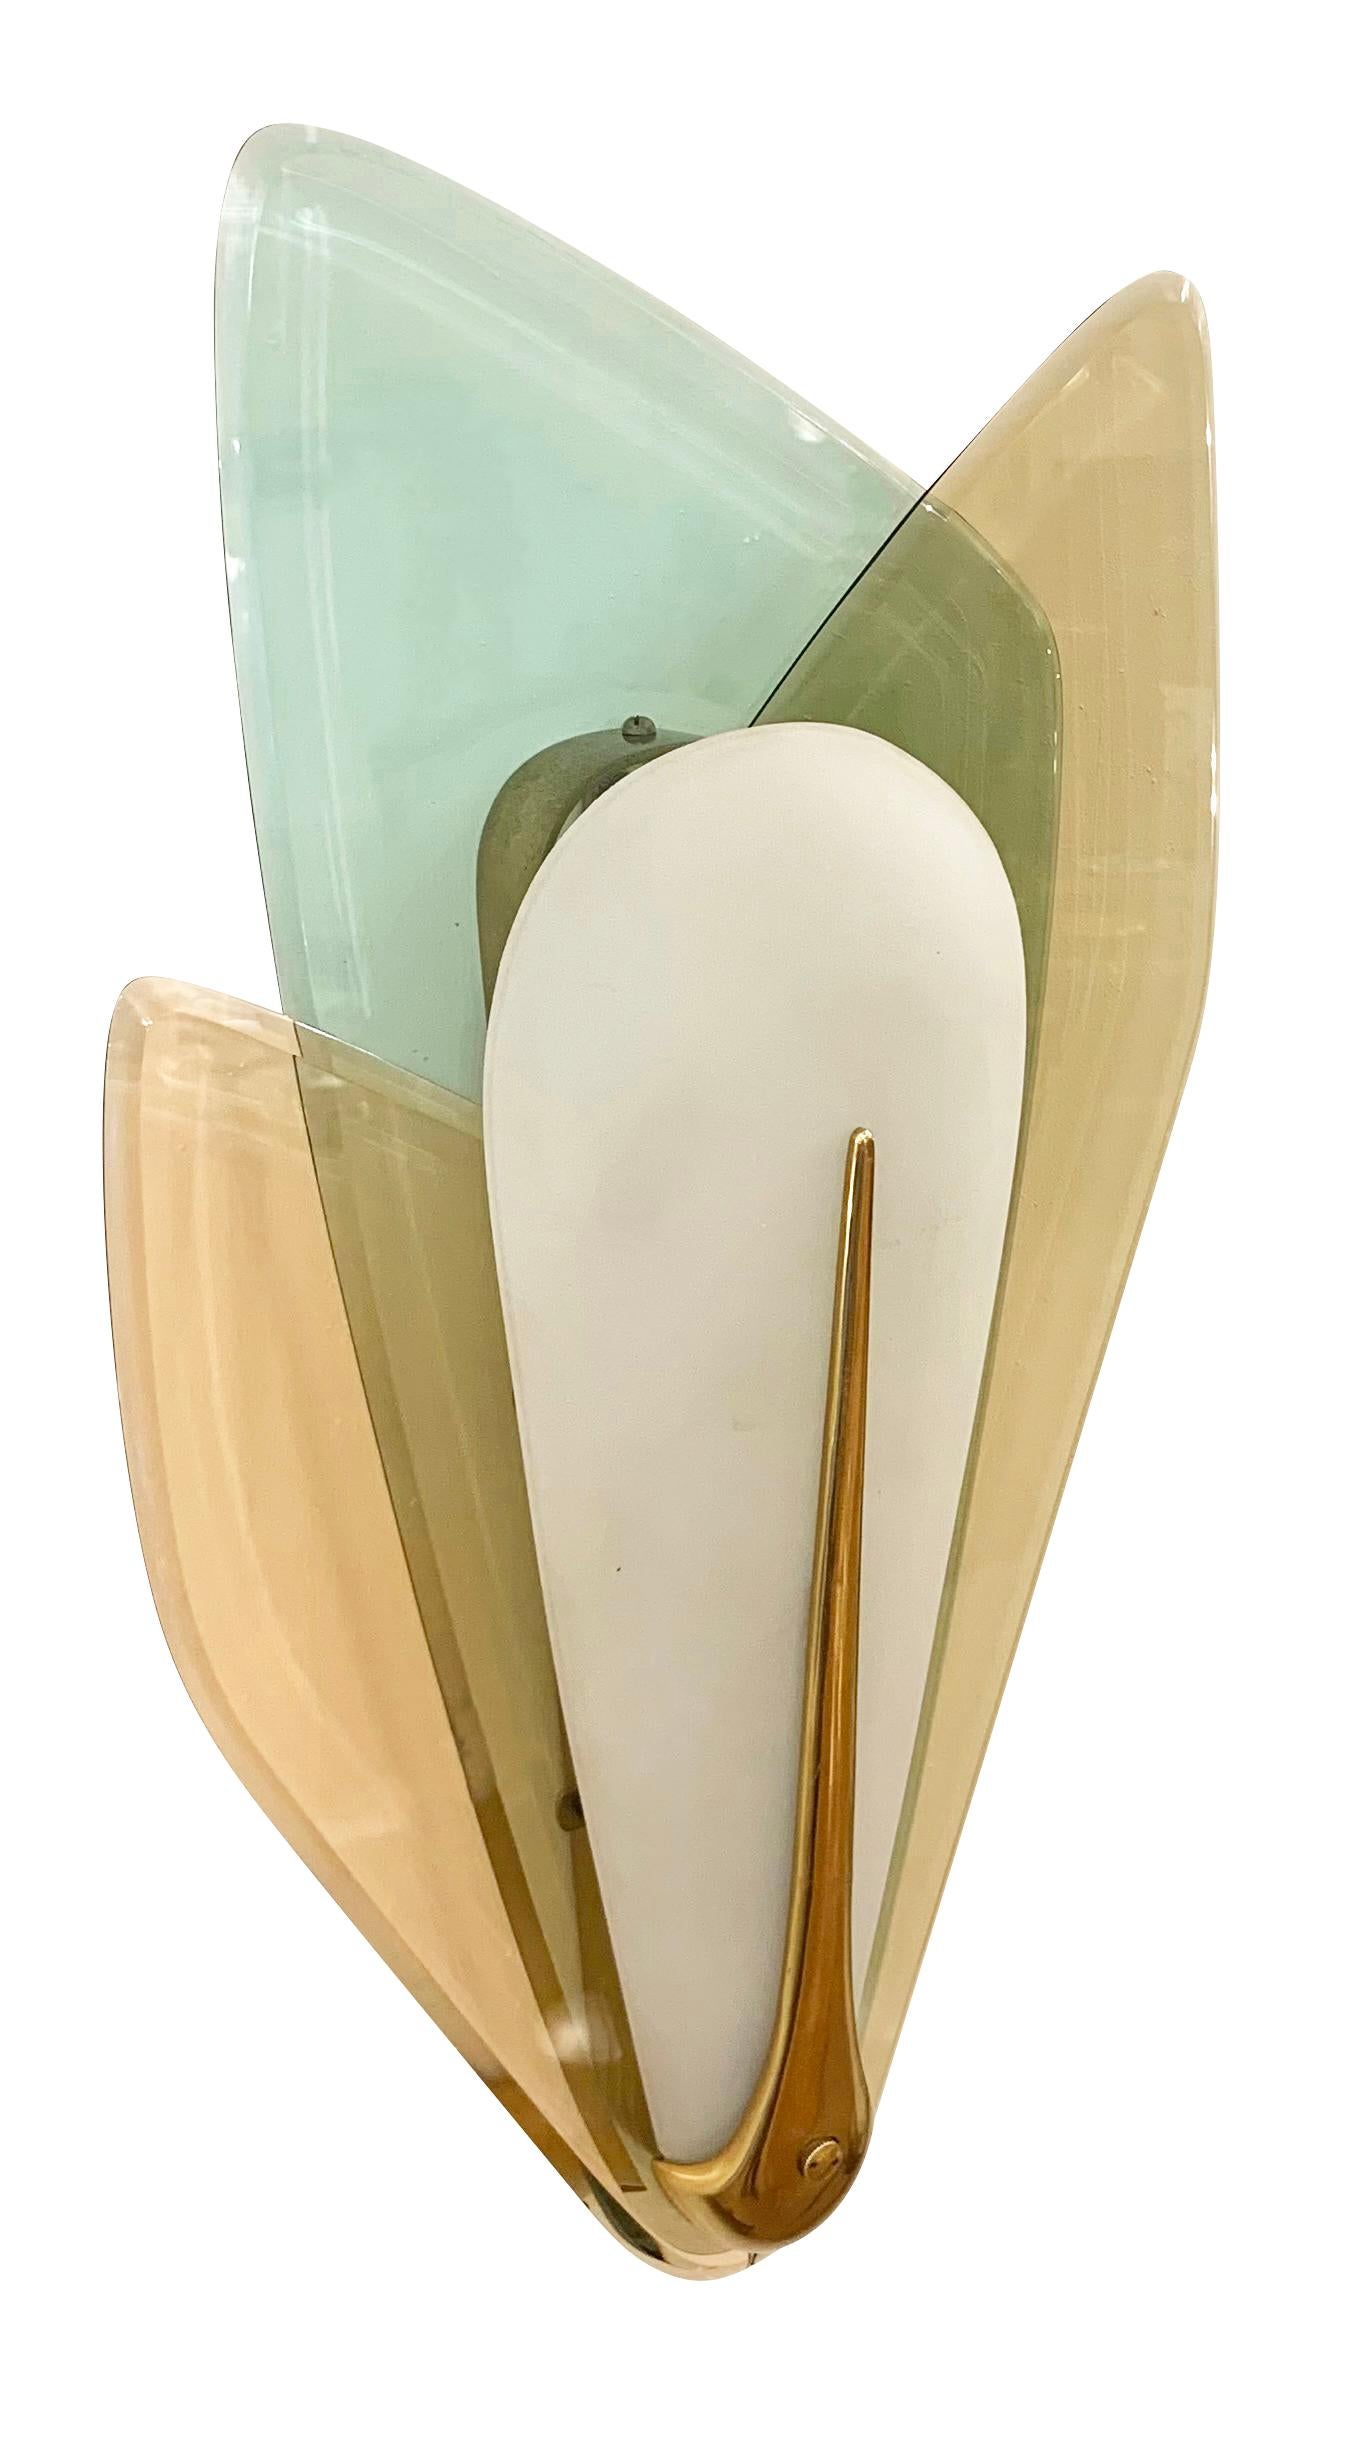 Seltene Wandleuchten mit bernsteinfarbenen und türkisfarbenen Gläsern, entworfen von Max Ingrand für Fontana Arte. Die Lichtquellen werden durch einen umgekehrten, tropfenförmigen, mattierten Glasschirm verdeckt. Hardware aus Messing.

Zustand: